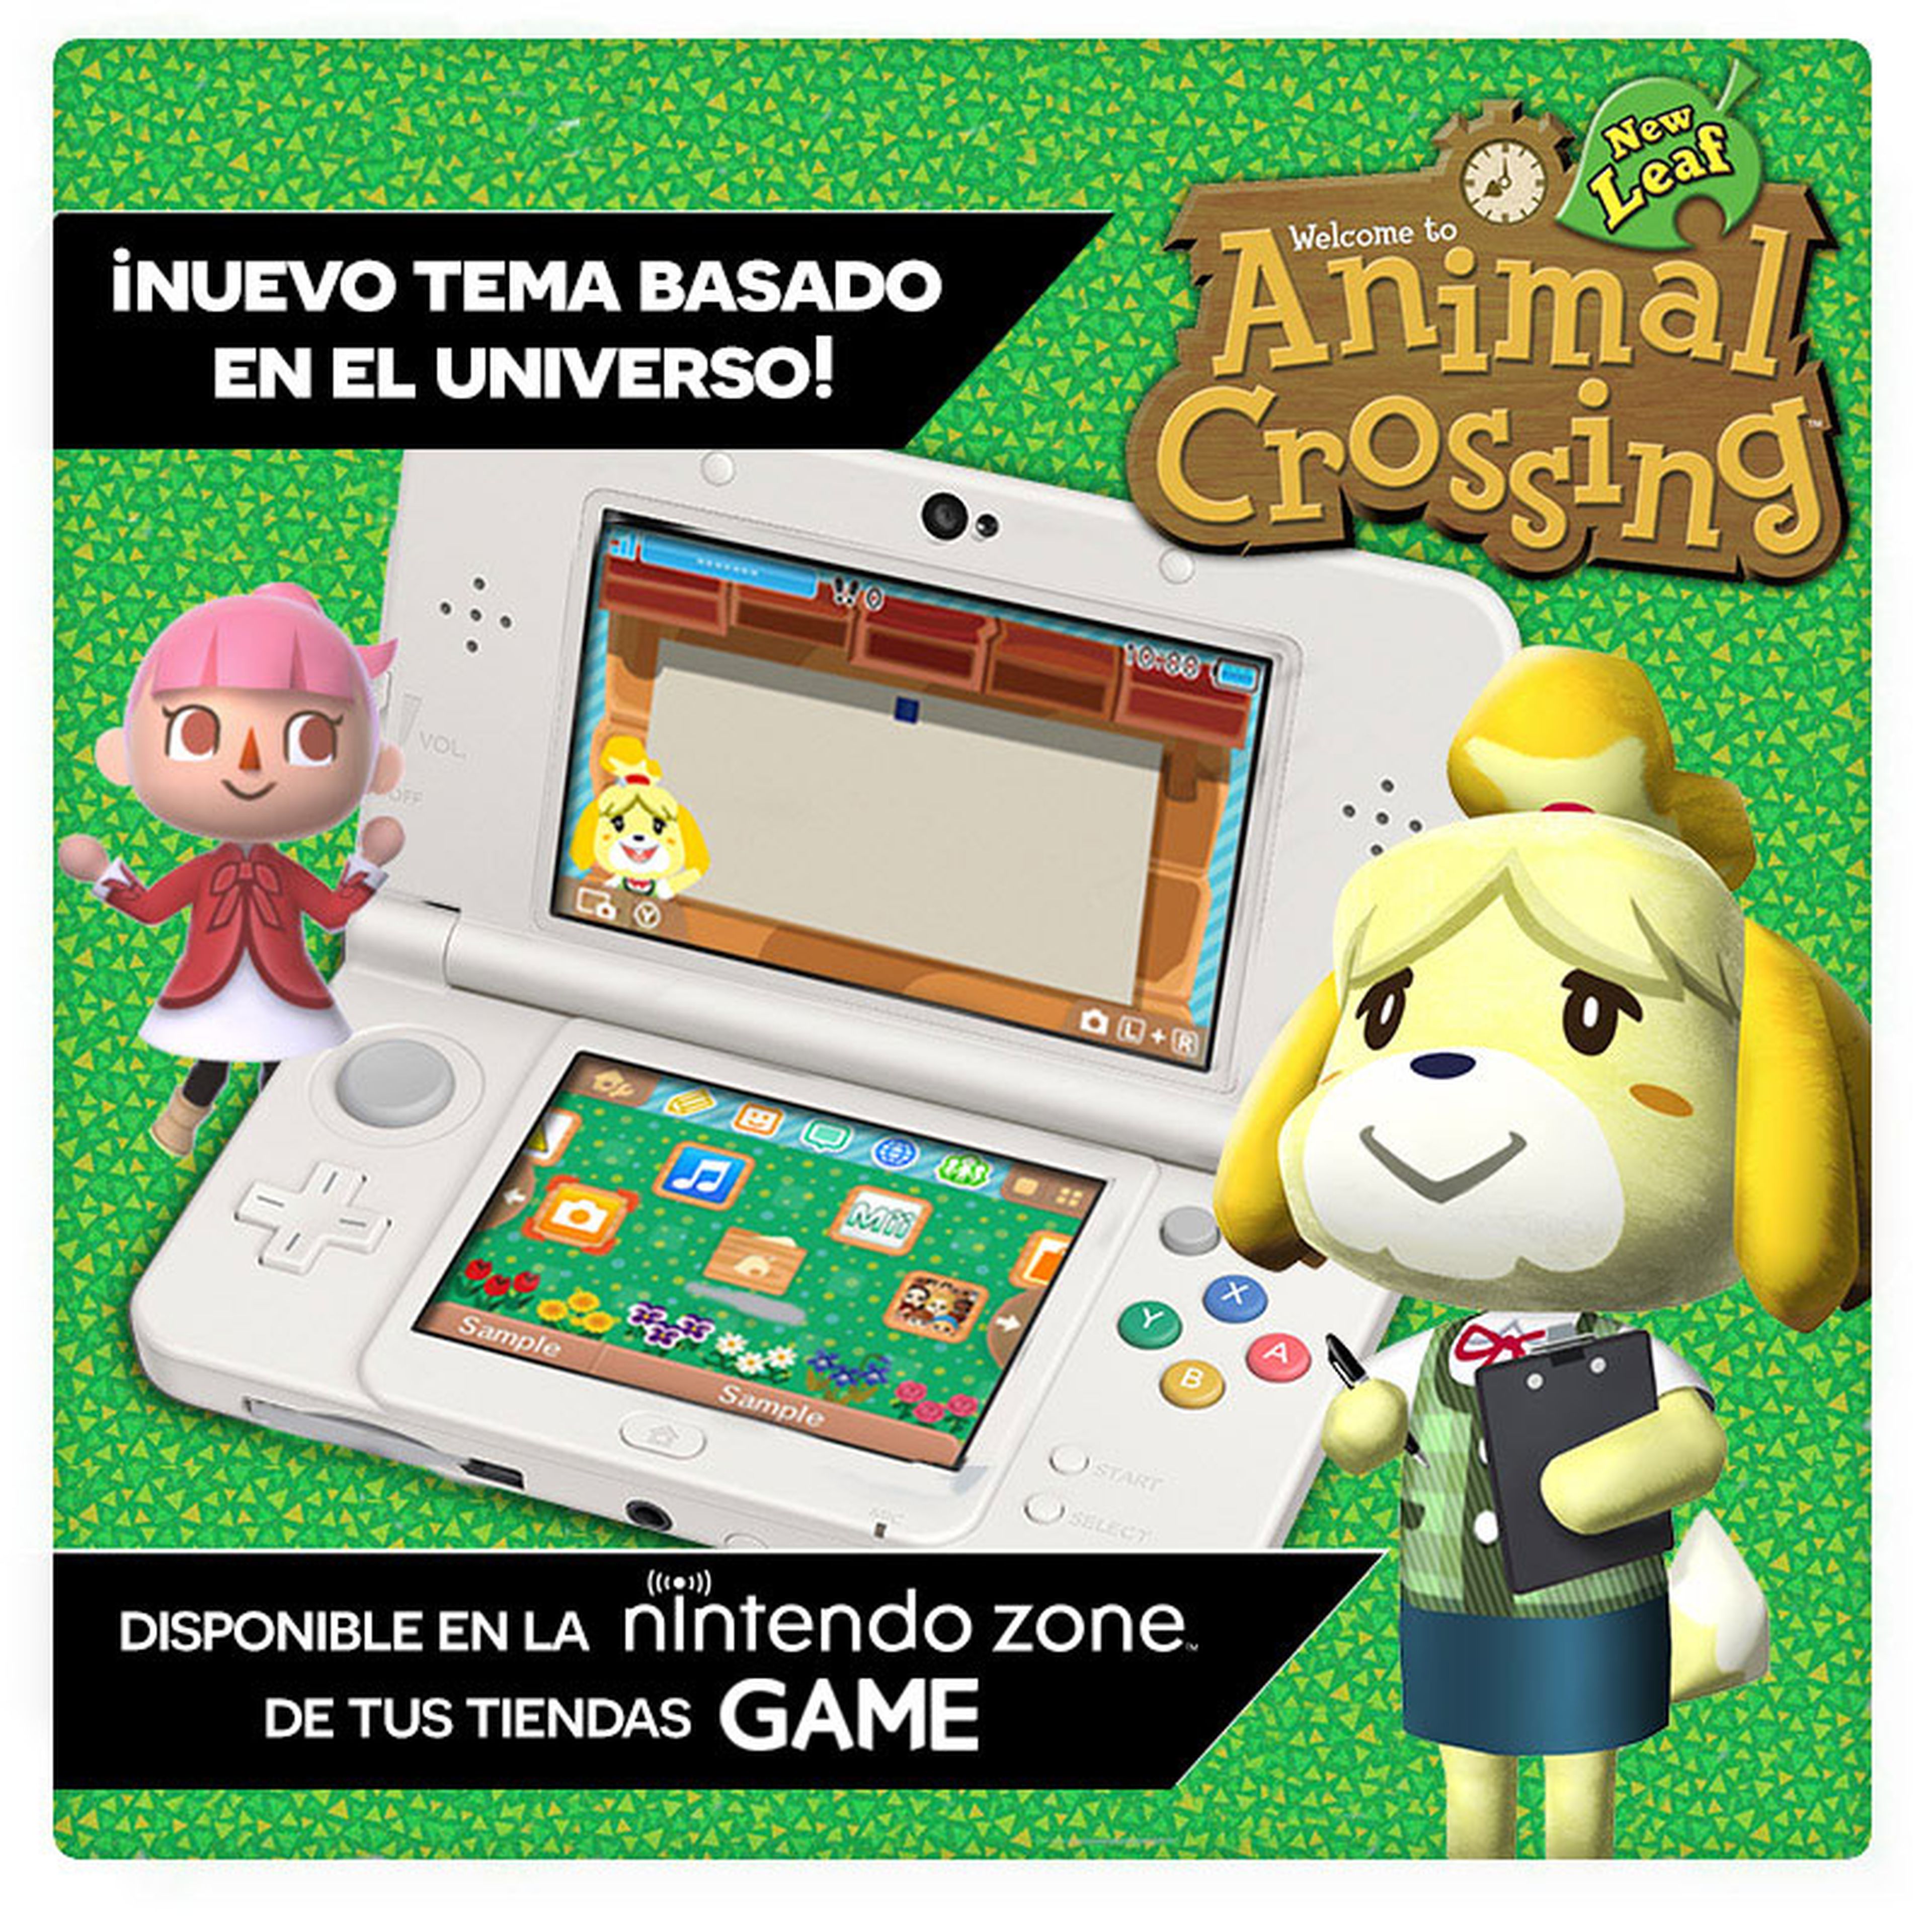 Nintendo Zone de GAME, contenido exclusivo de Animal Crossing New Leaf